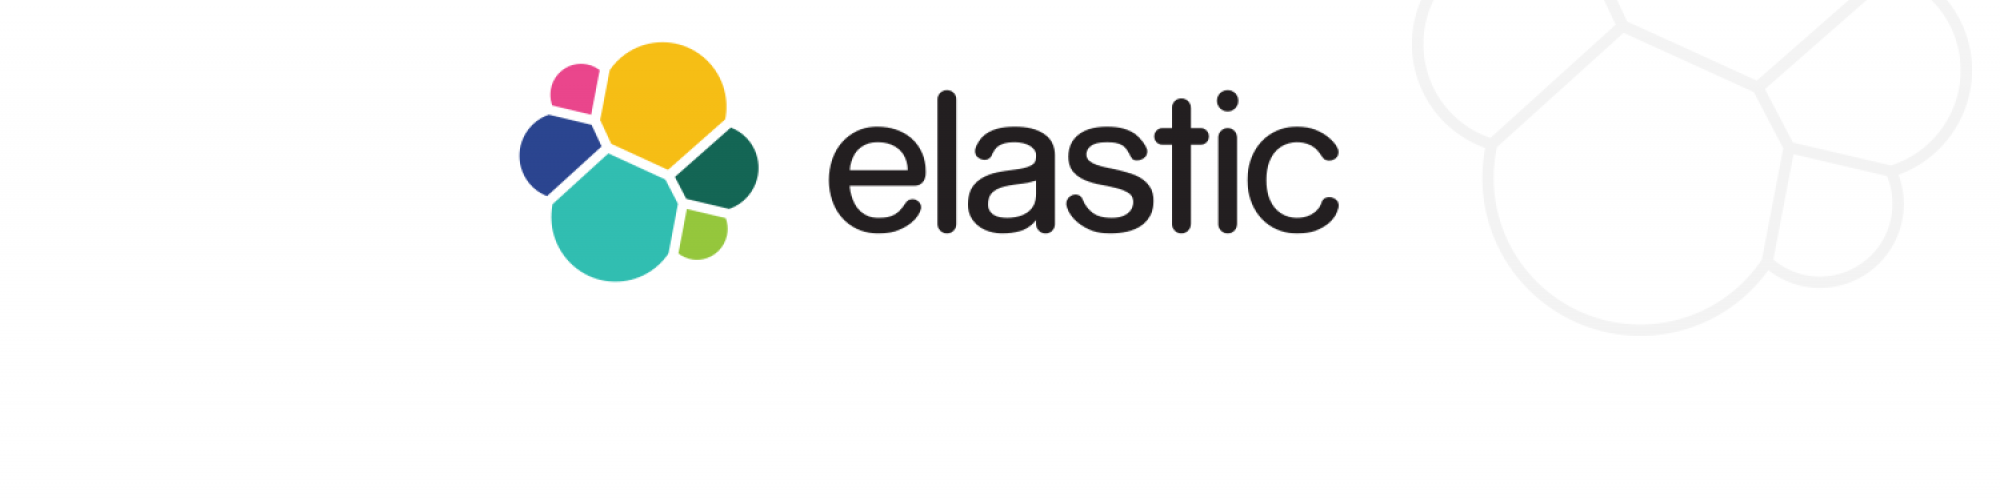 elastic co download